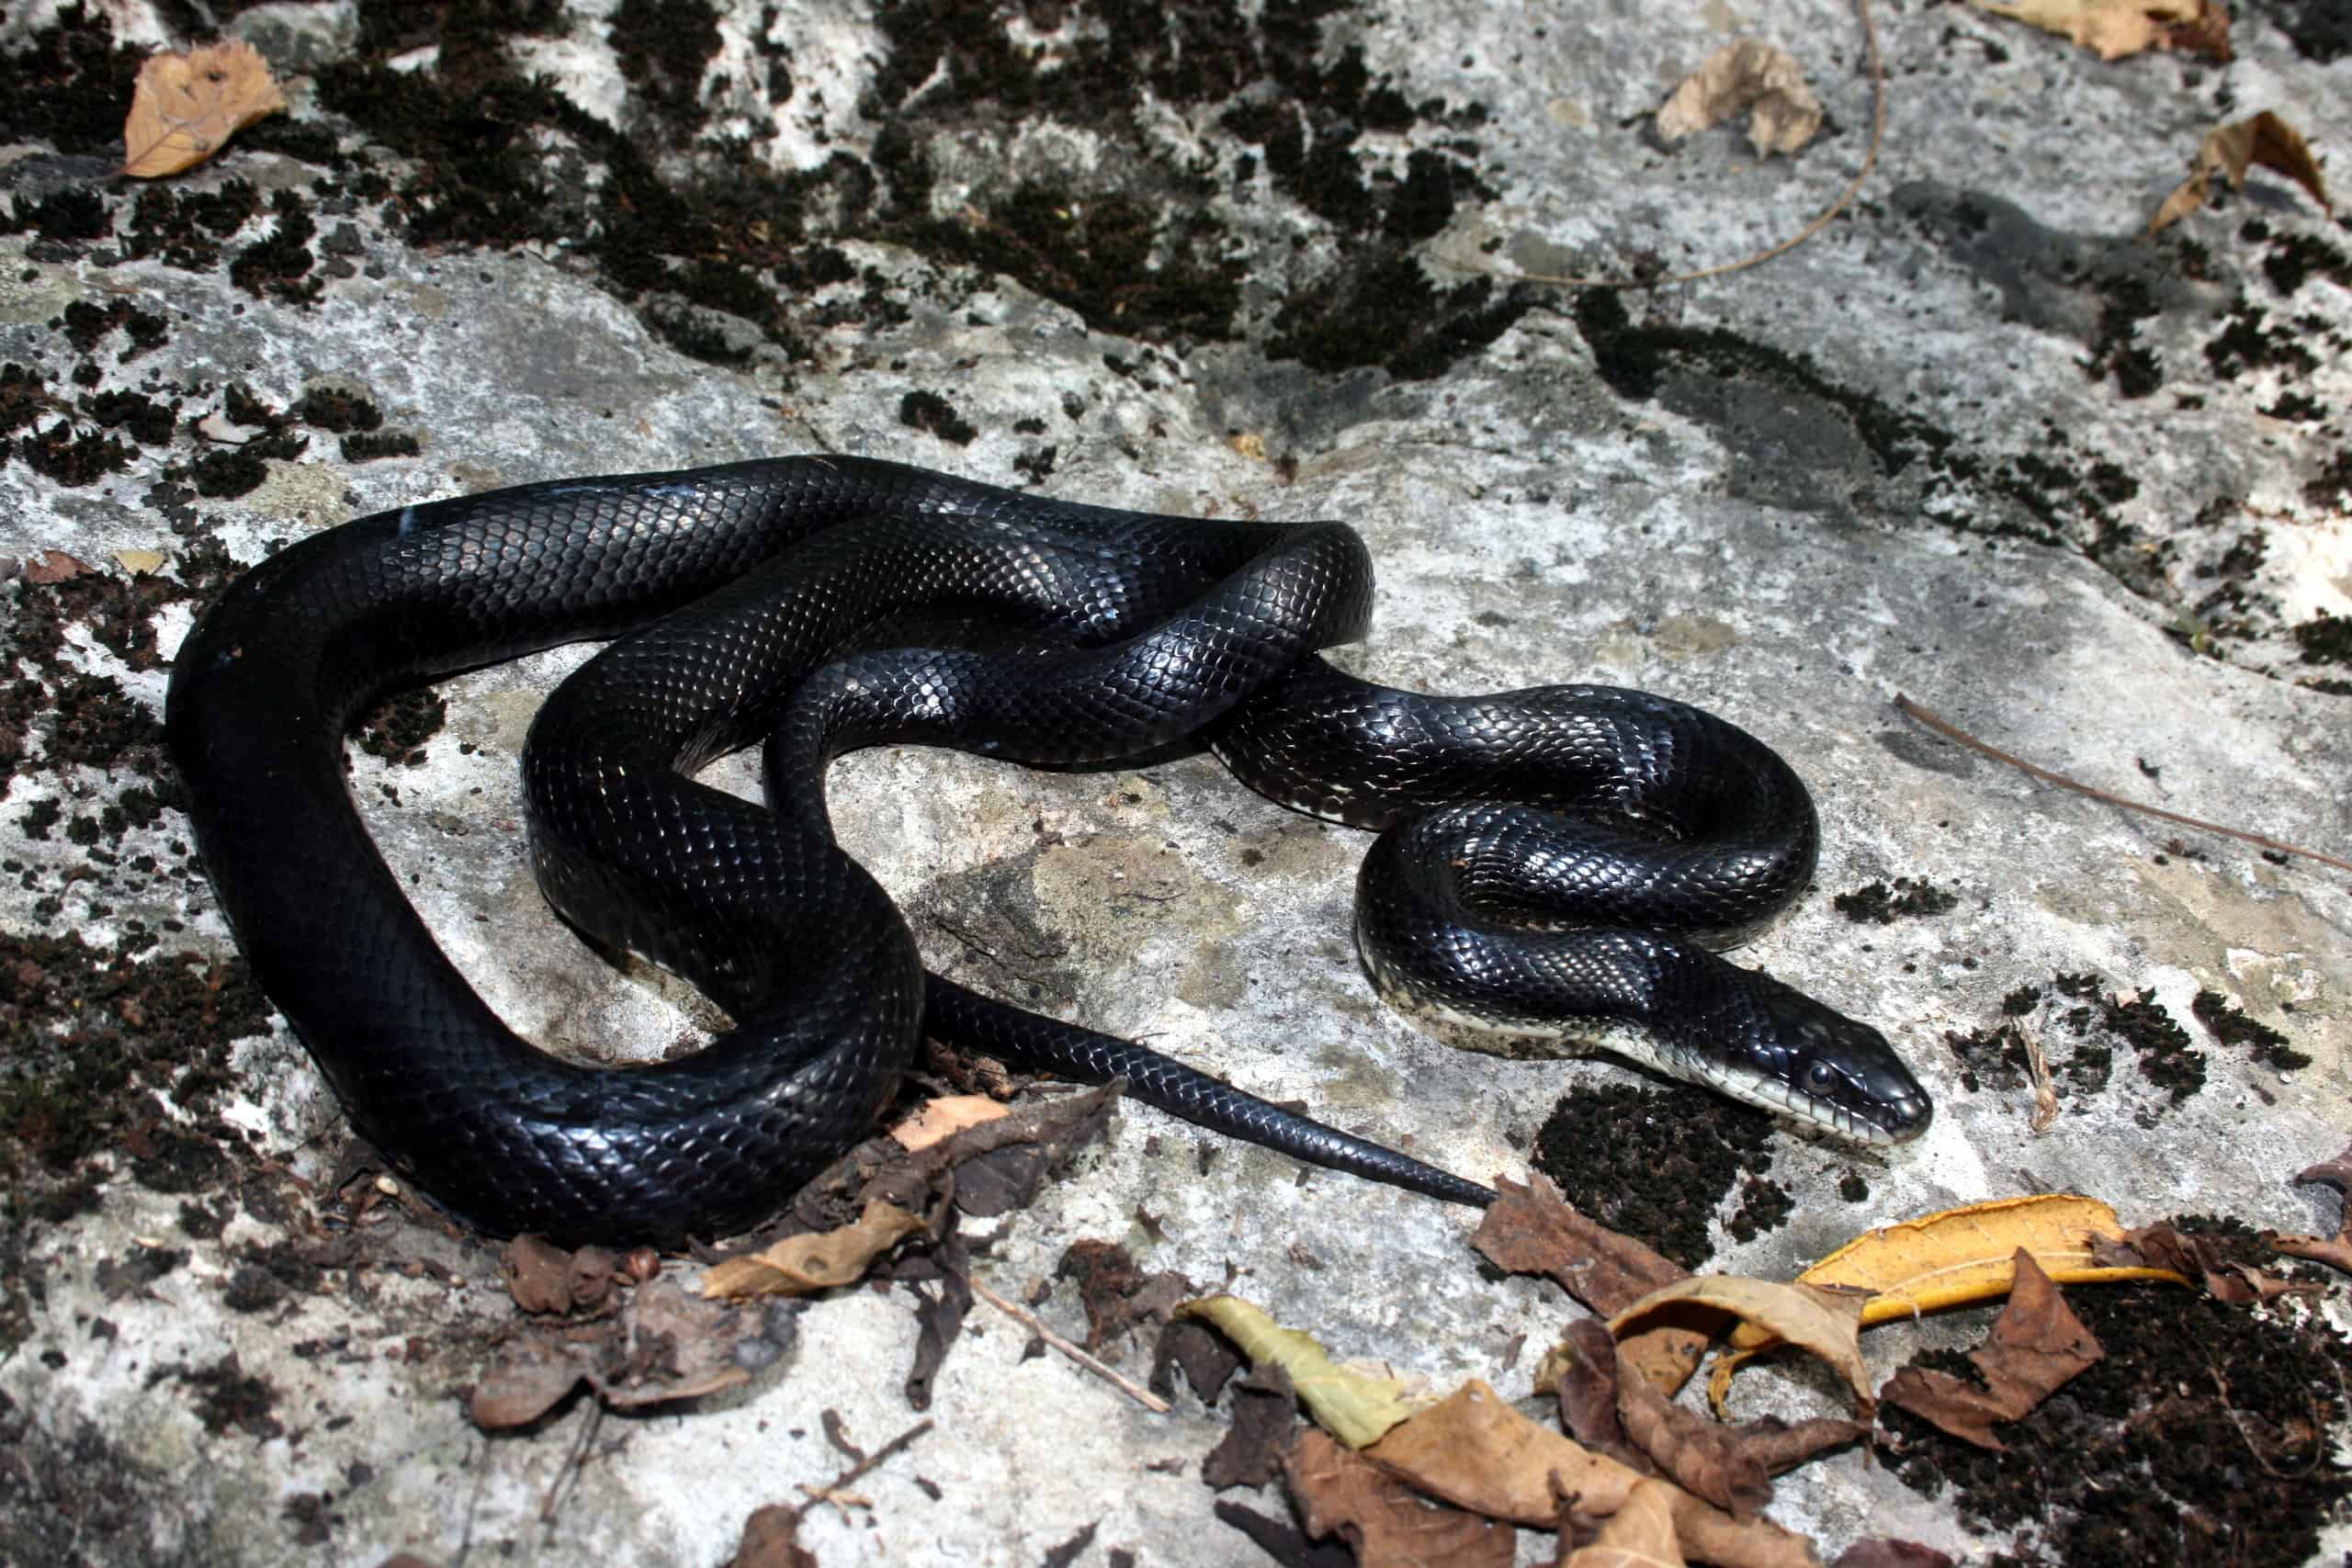 A black rat snake slithering over a large rock